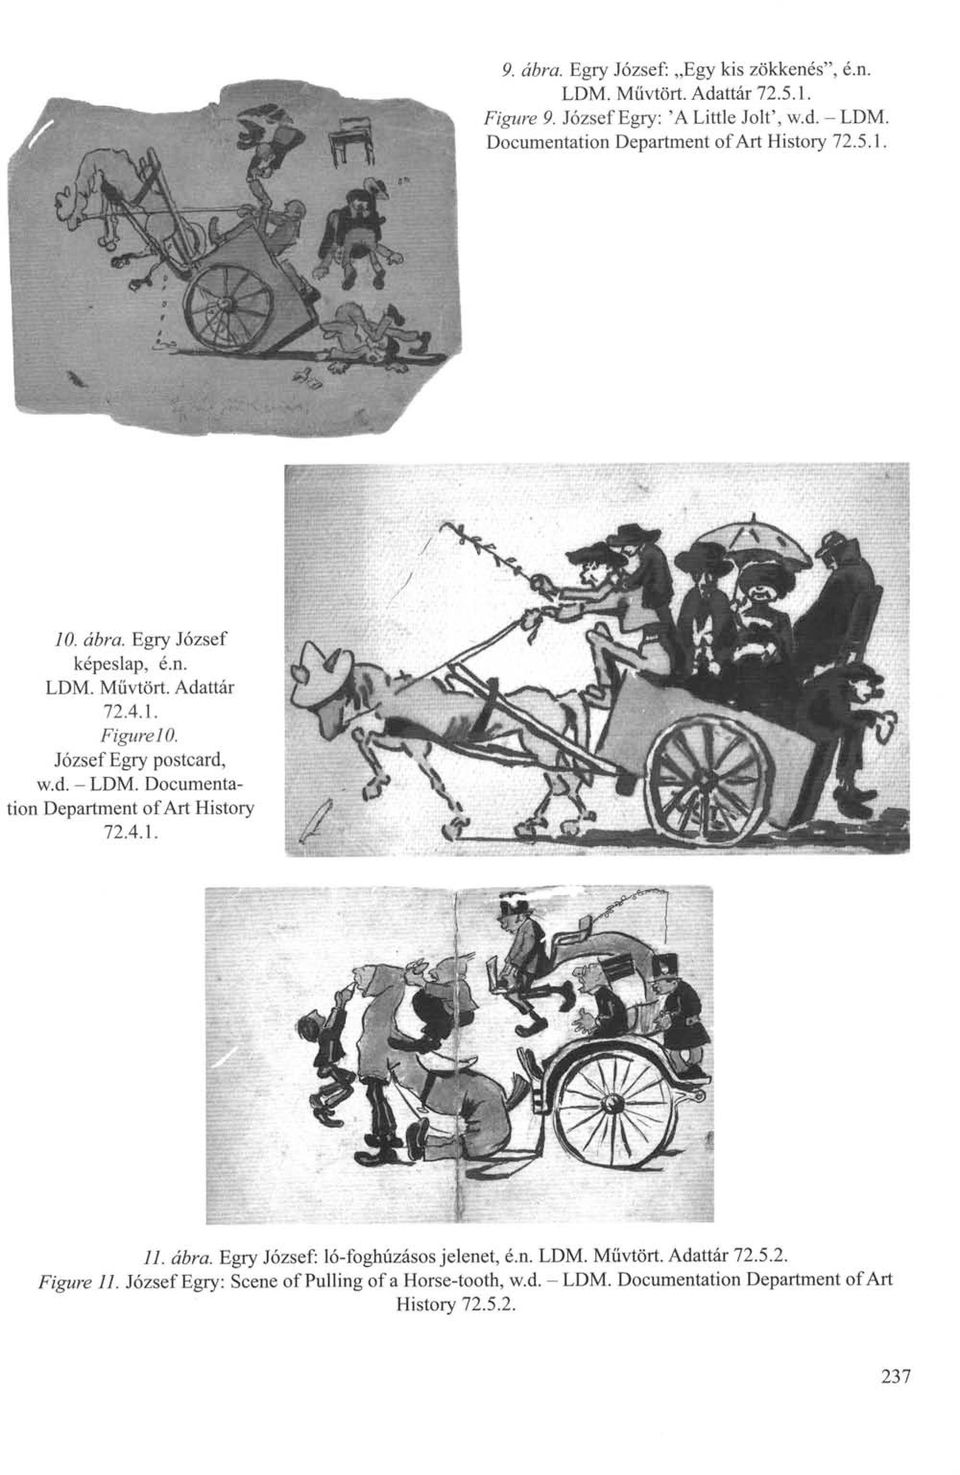 József Egry postcard, w.d. - LDM. Documentation Department of Art History 72.4.1. 11. ábra. Egry József: ló-foghúzásos jelenet, é.n. LDM. Művtört.